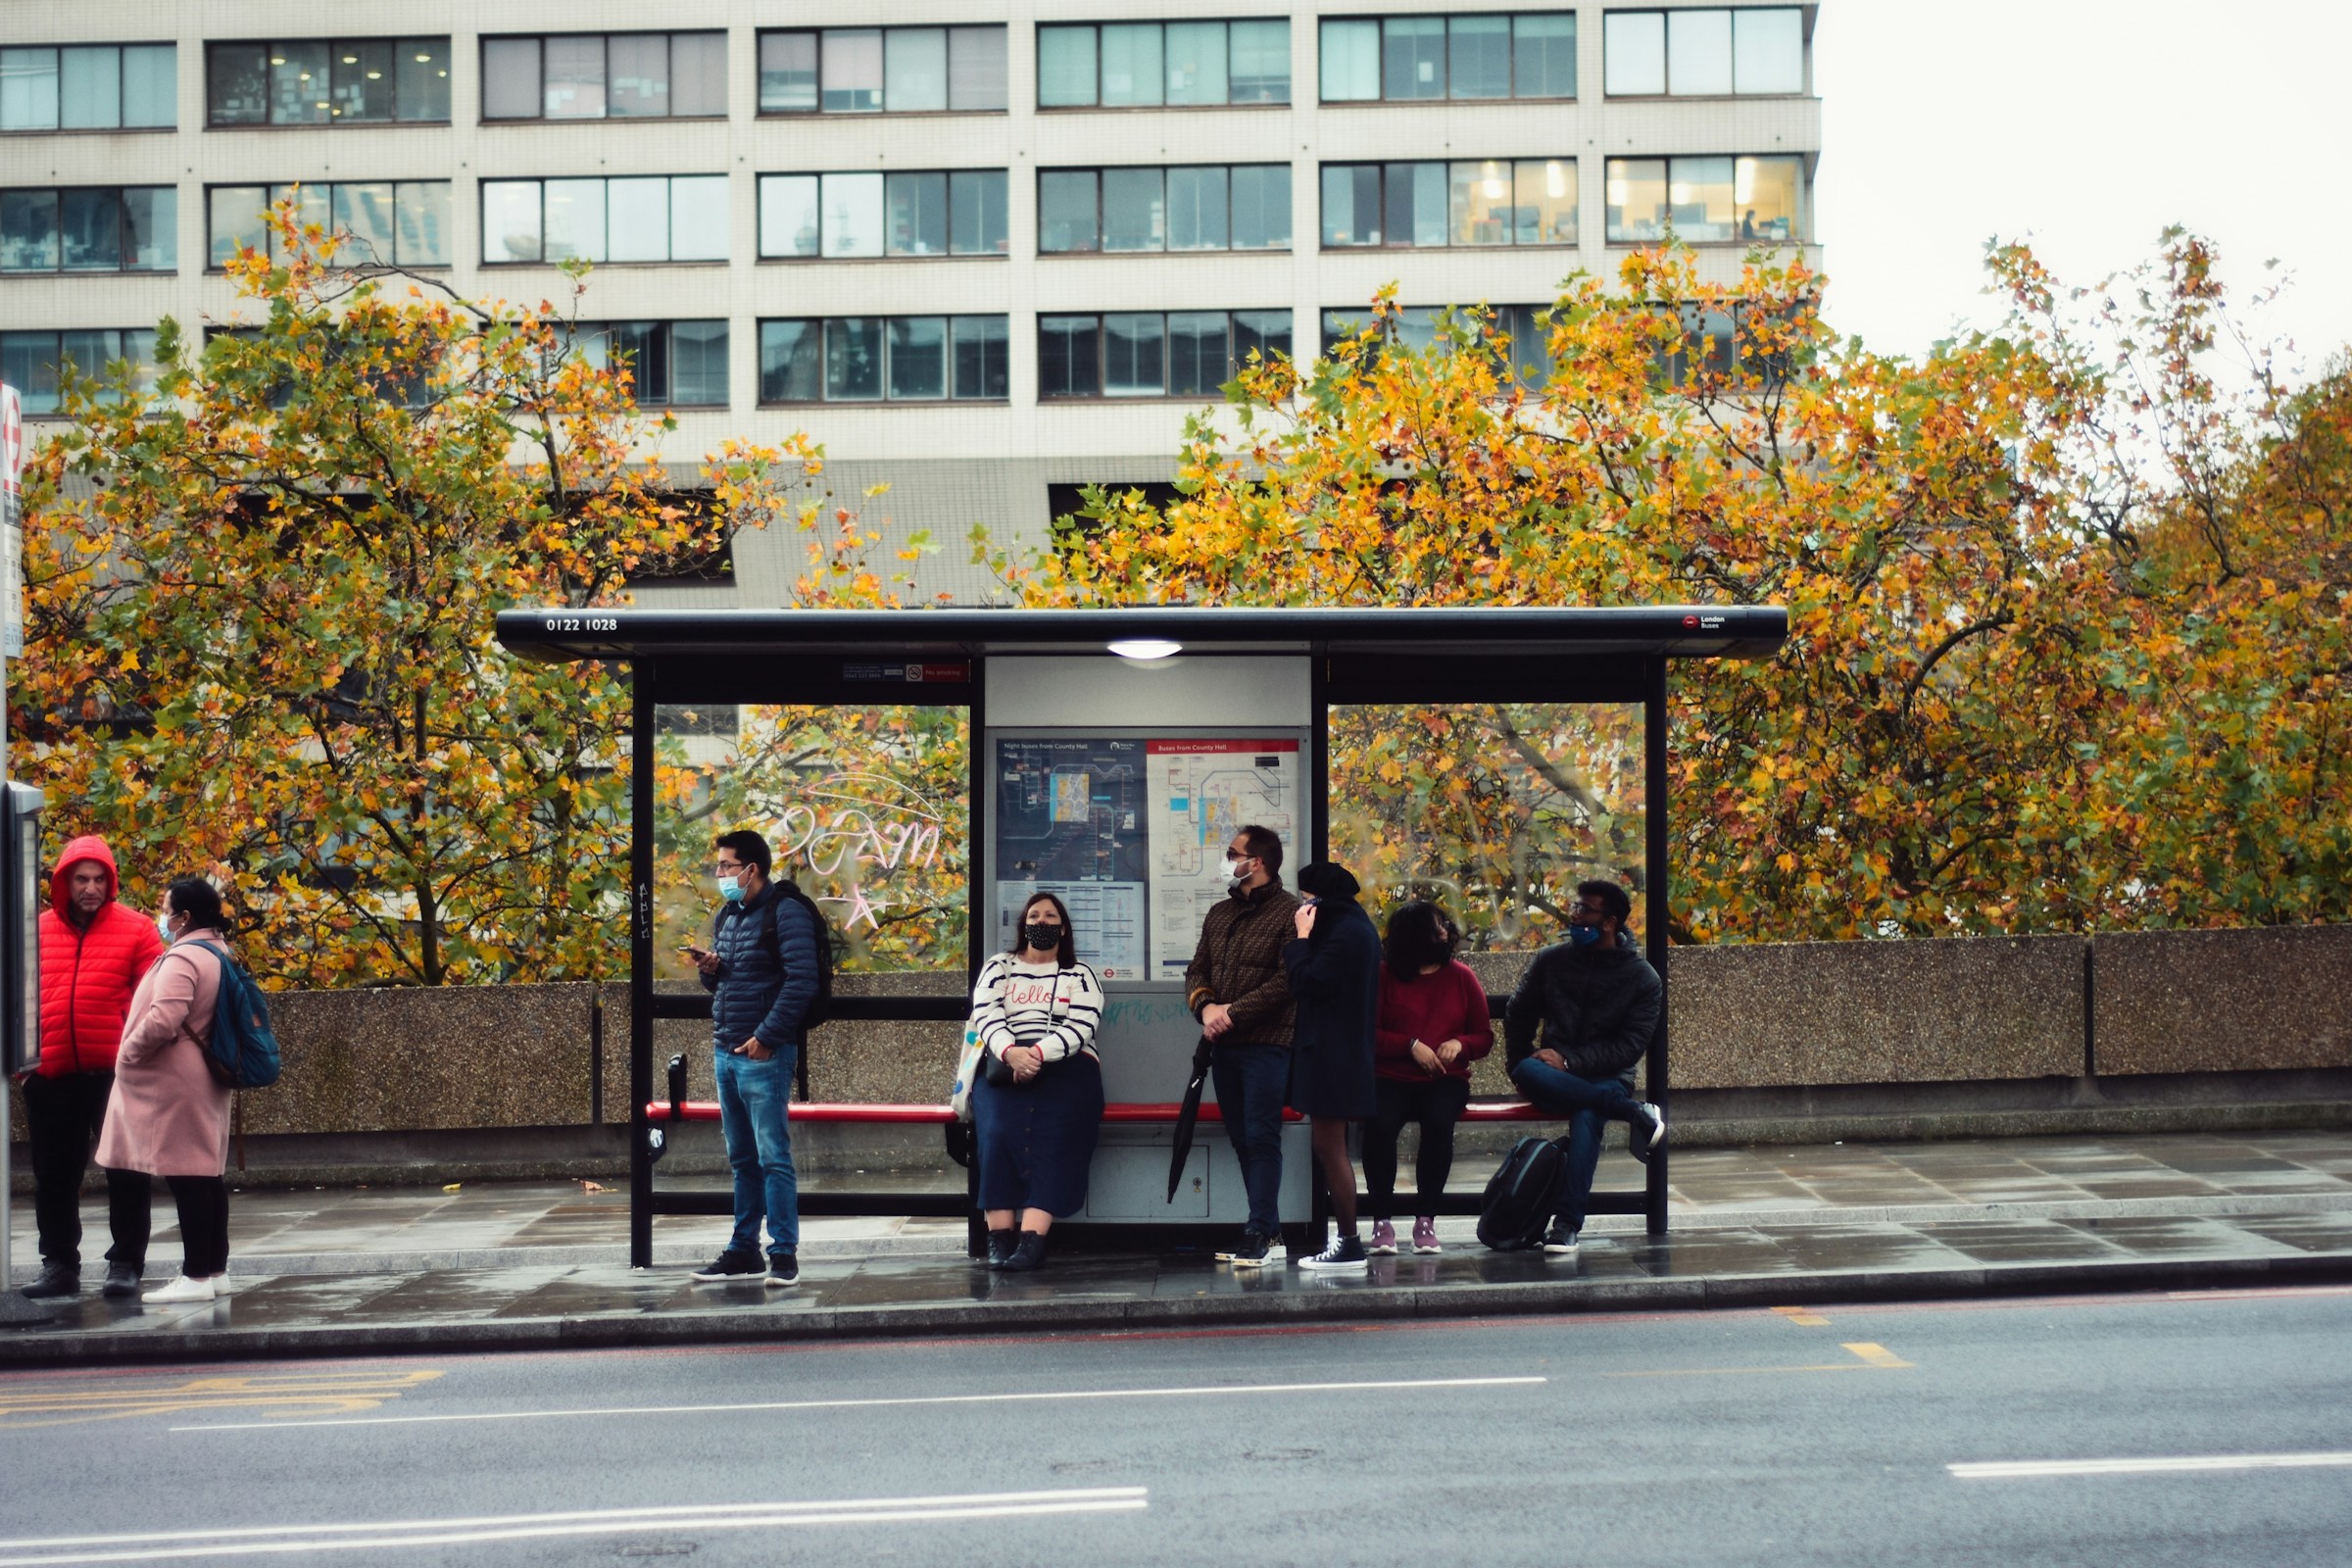 Des gens attendent le bus à un arrêt de bus | Source : Unsplash